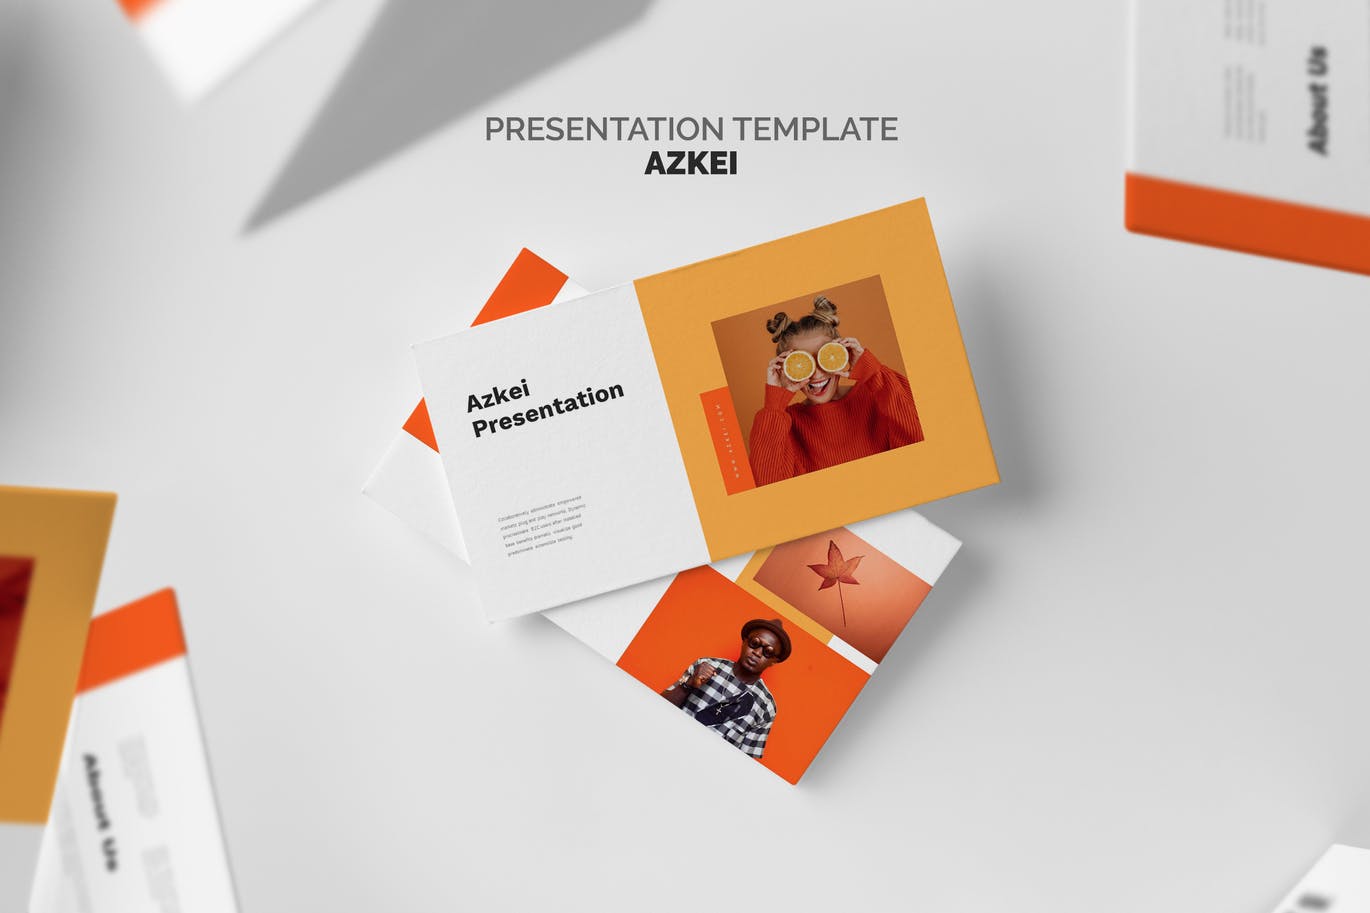 创意橙色主题PPT幻灯片模板下载 Azkei : Creative Orange Powerpoint Template 幻灯图表 第1张